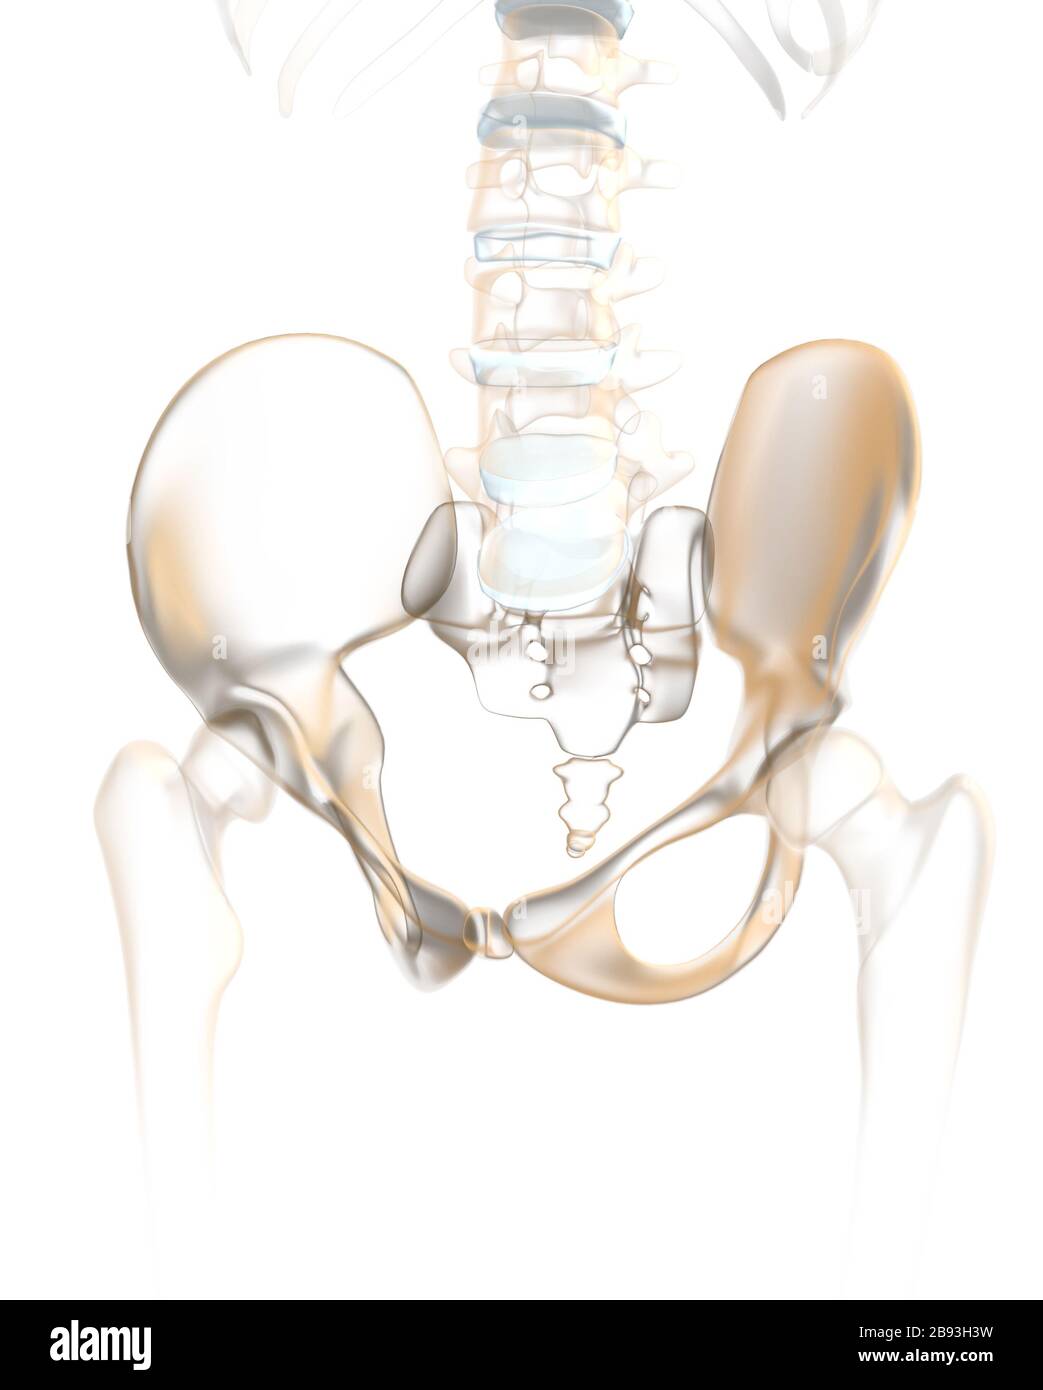 Colonna vertebrale umana con pelvi, articolazione sacroiliaca e vertebra lombata, llustrazione 3D anatomica Foto Stock